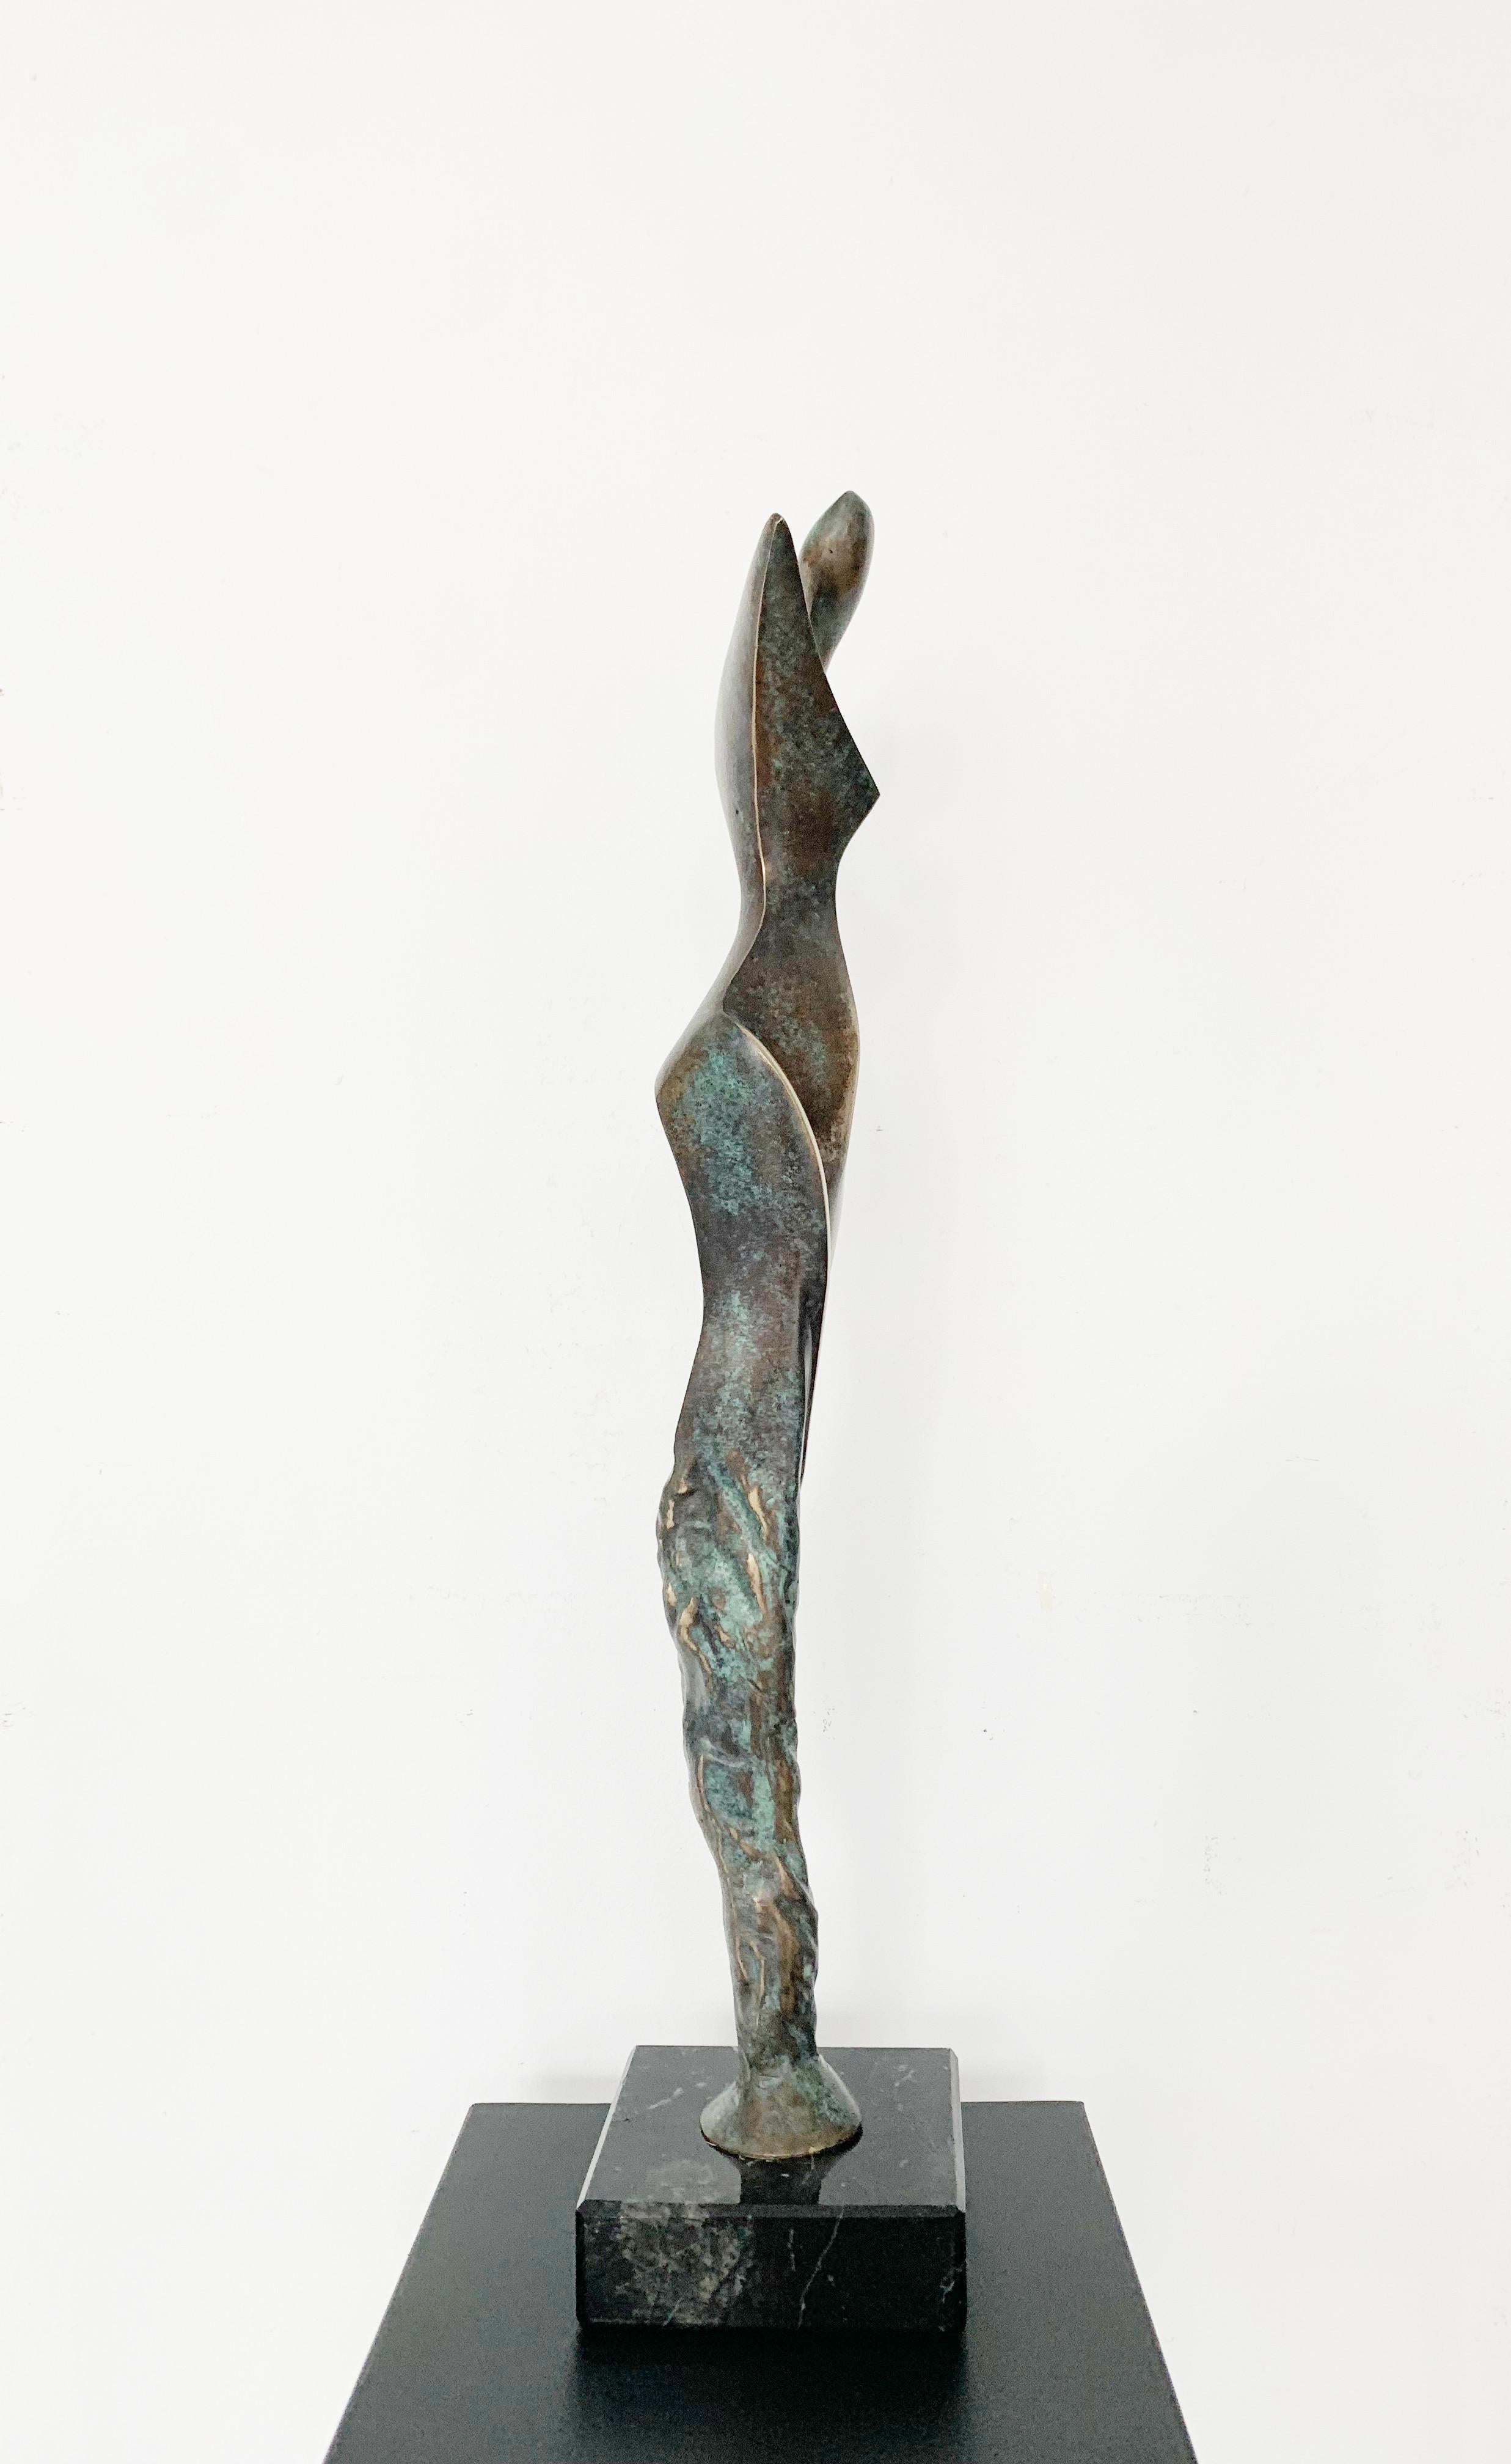 Sculpture contemporaine en bronze sur socle en marbre de l'artiste polonais Stan Wysocki. La sculpture représente une figure féminine filtrée par un style géométrique et synthétisant. L'artiste utilise très consciemment la patine comme outil